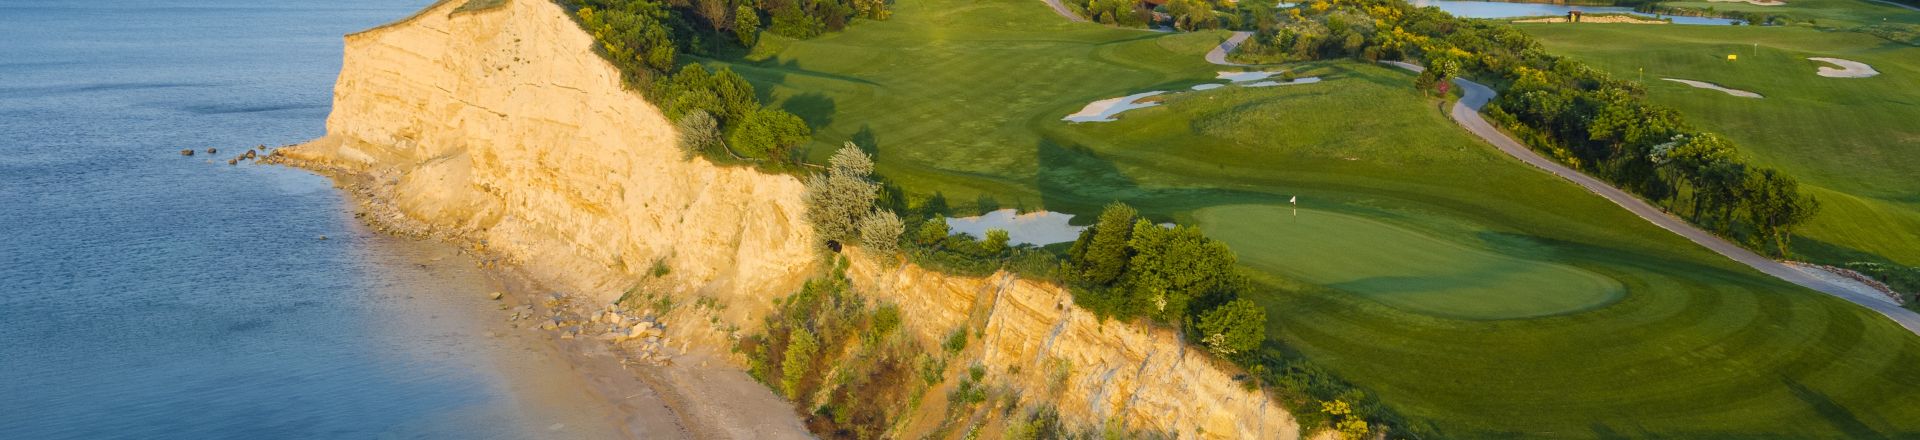 Thracian Cliffs Golf Course, Bulgaria